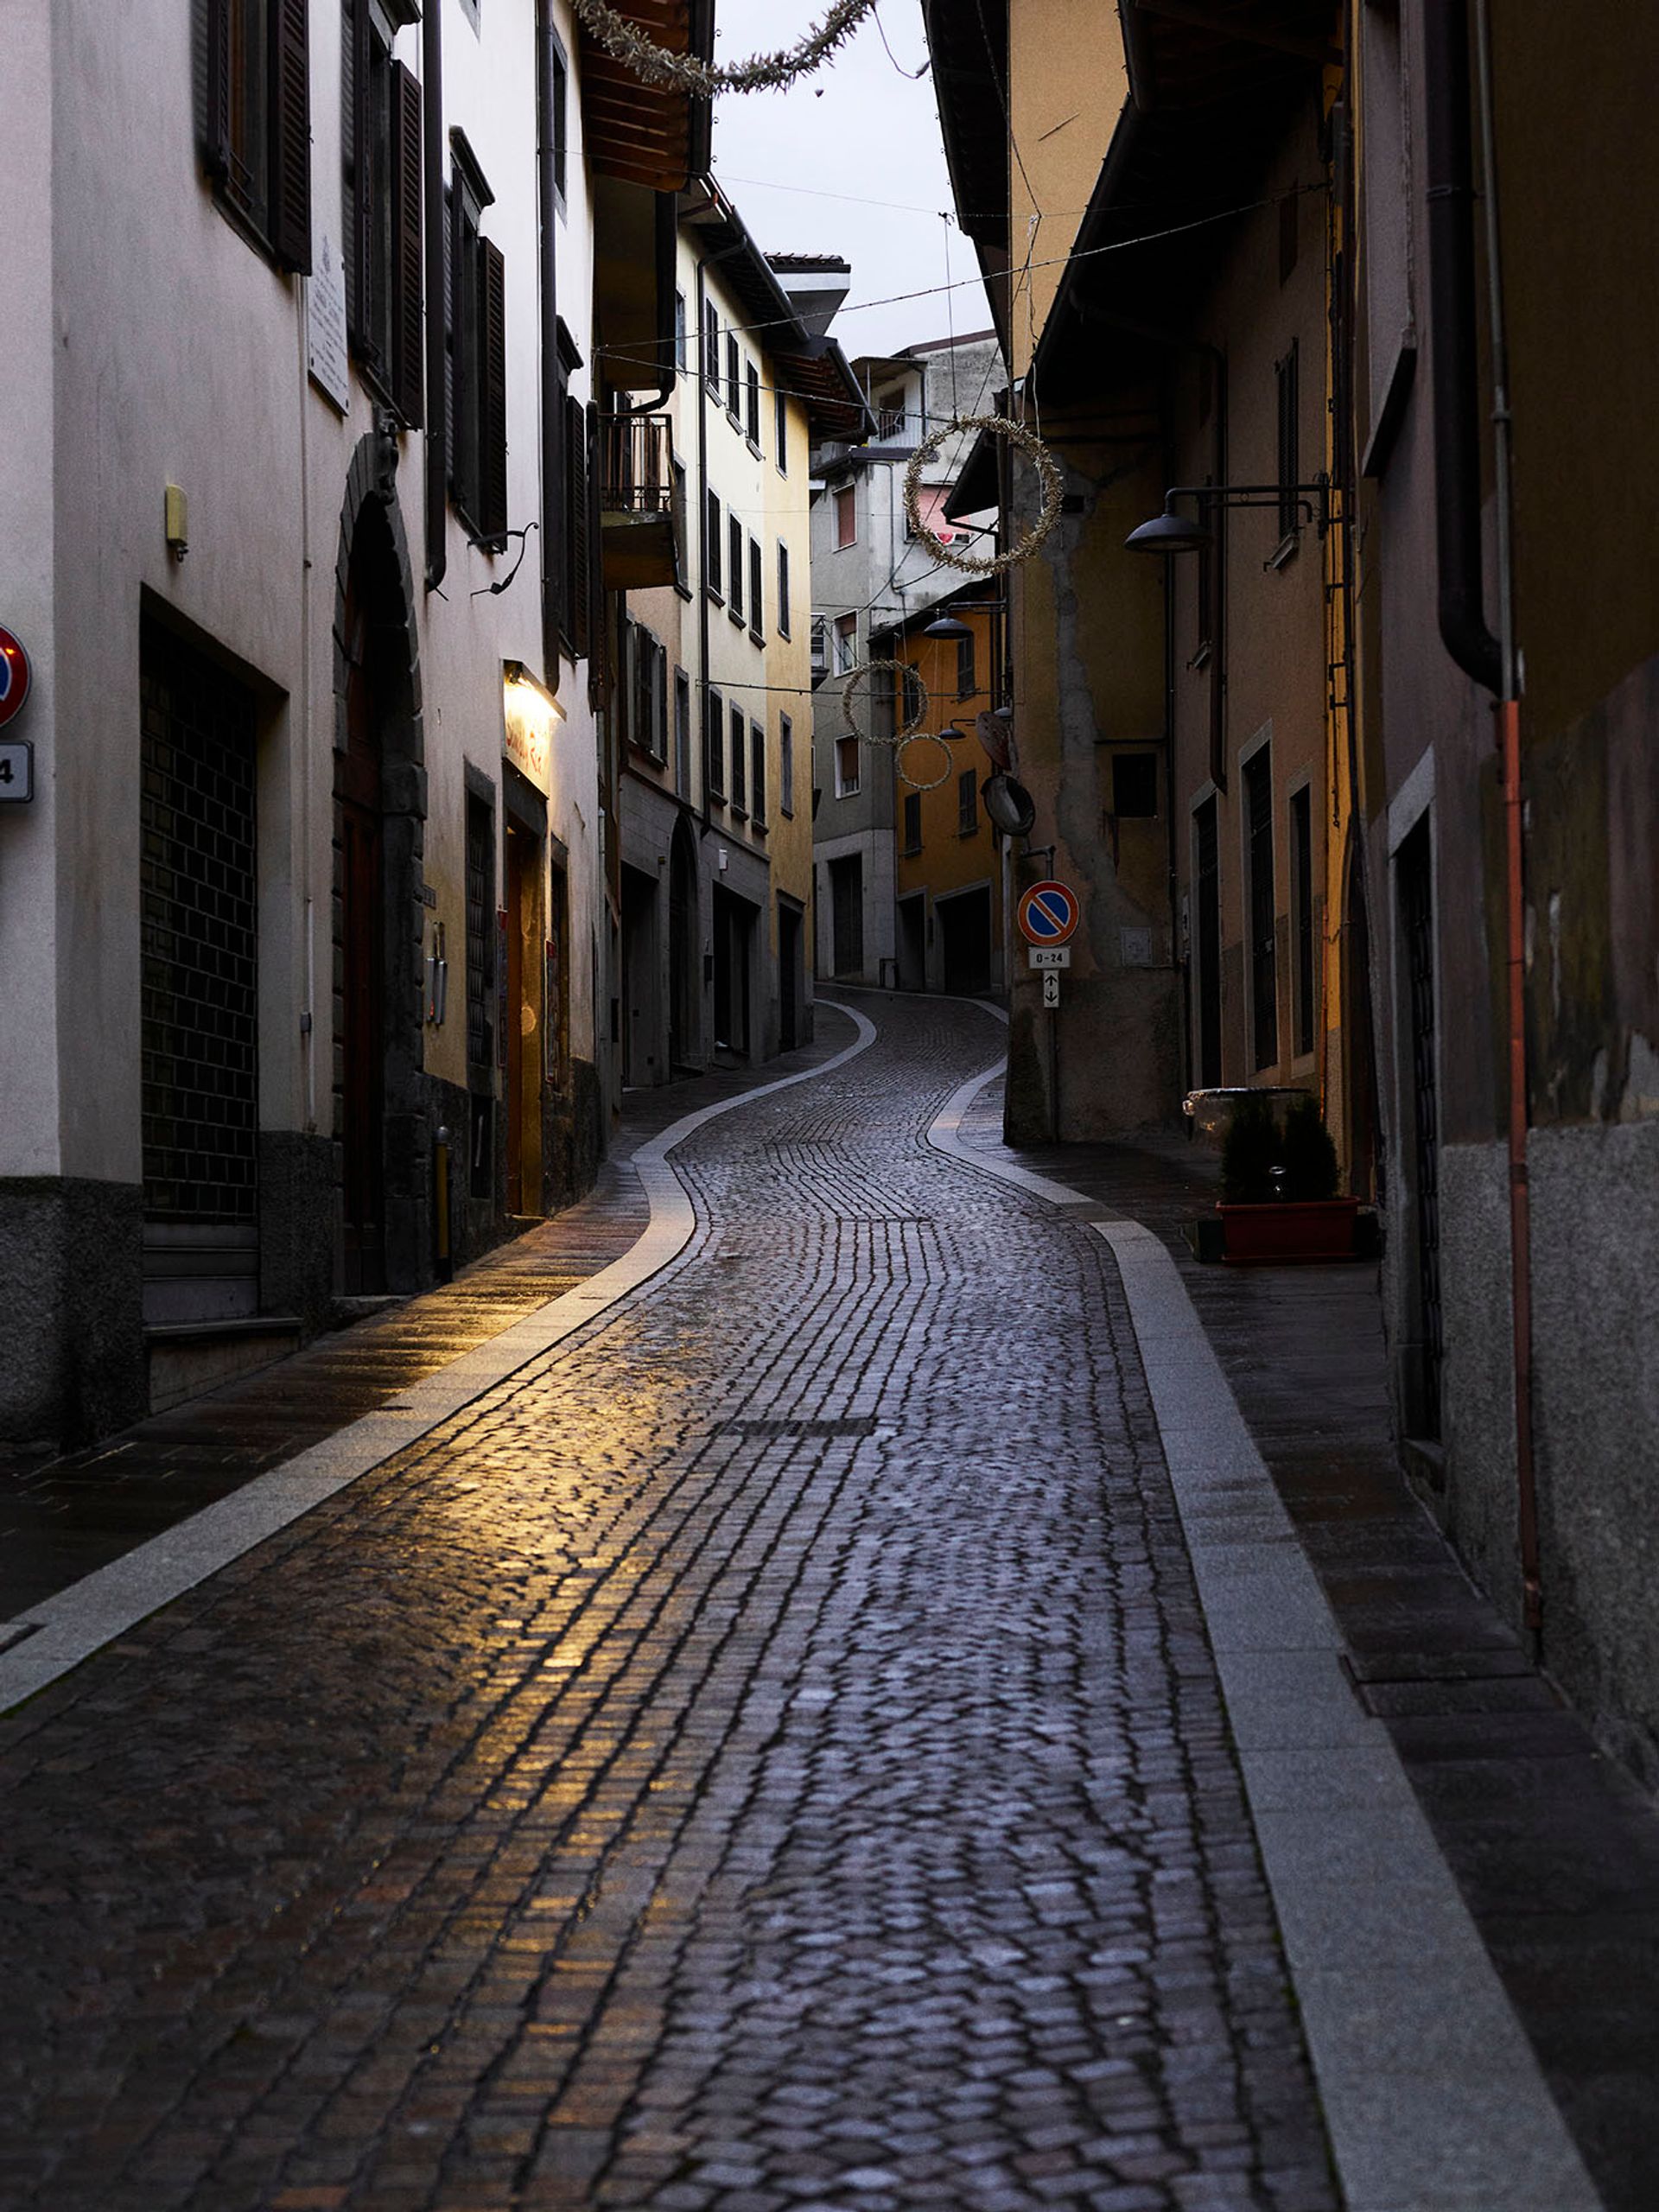 vicolo di paese in Italia. street photo by Mariano Herrera